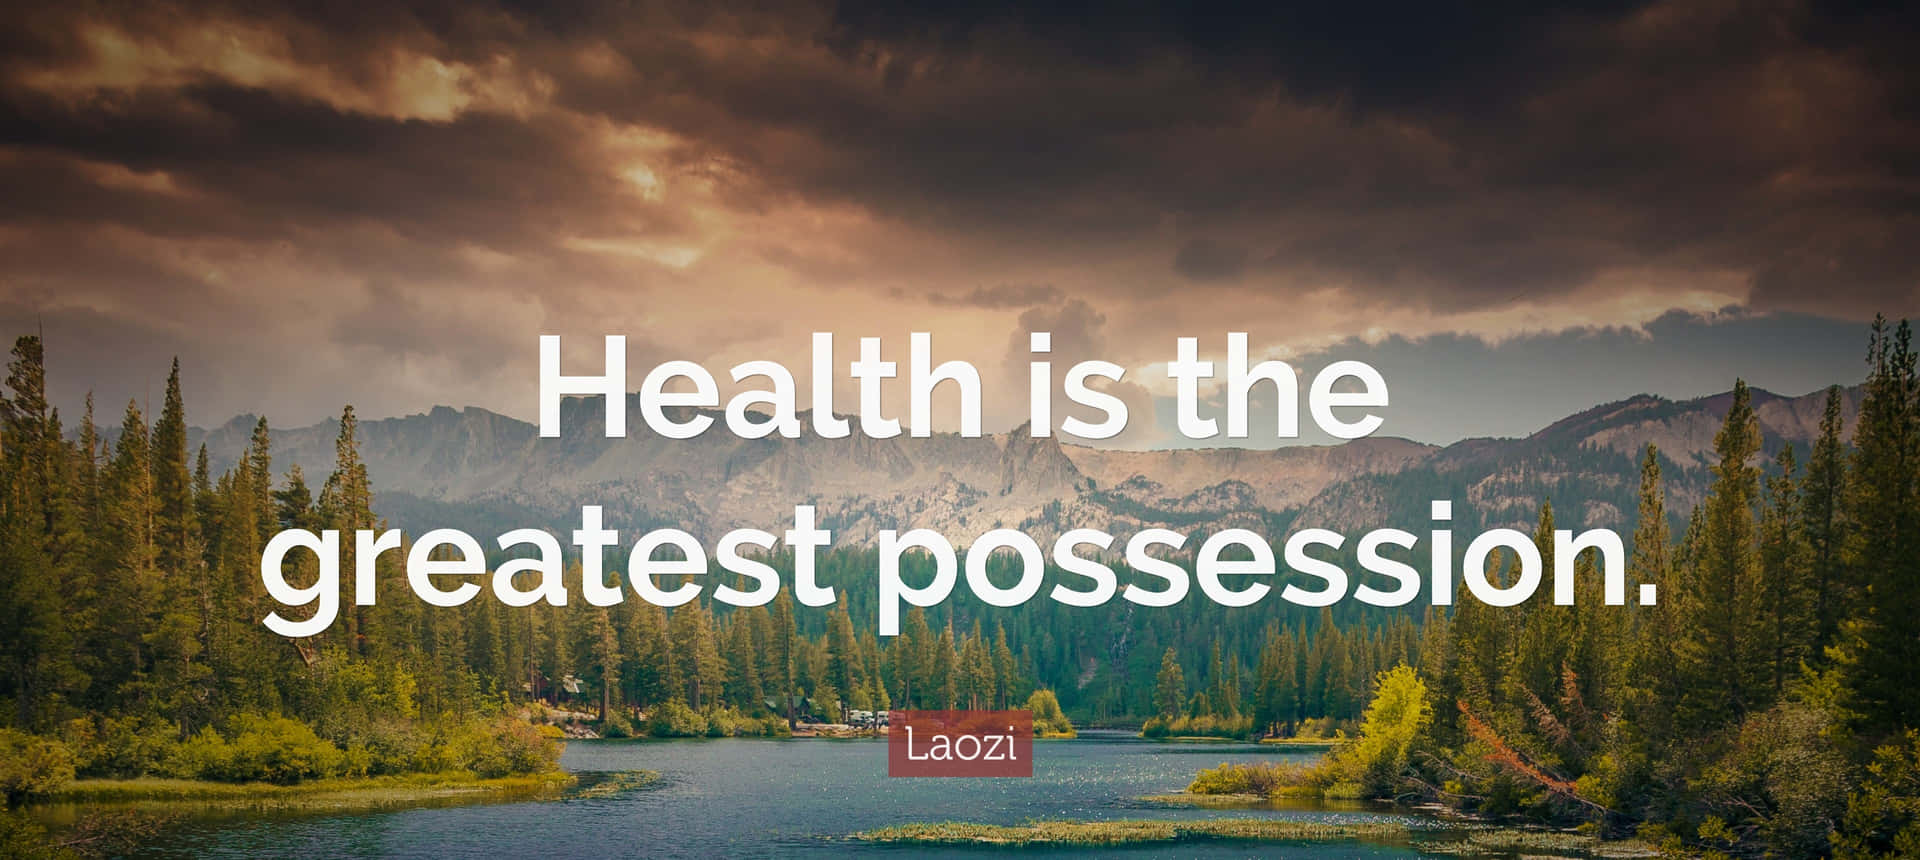 Greatest Possession Health Quote Laozi Wallpaper